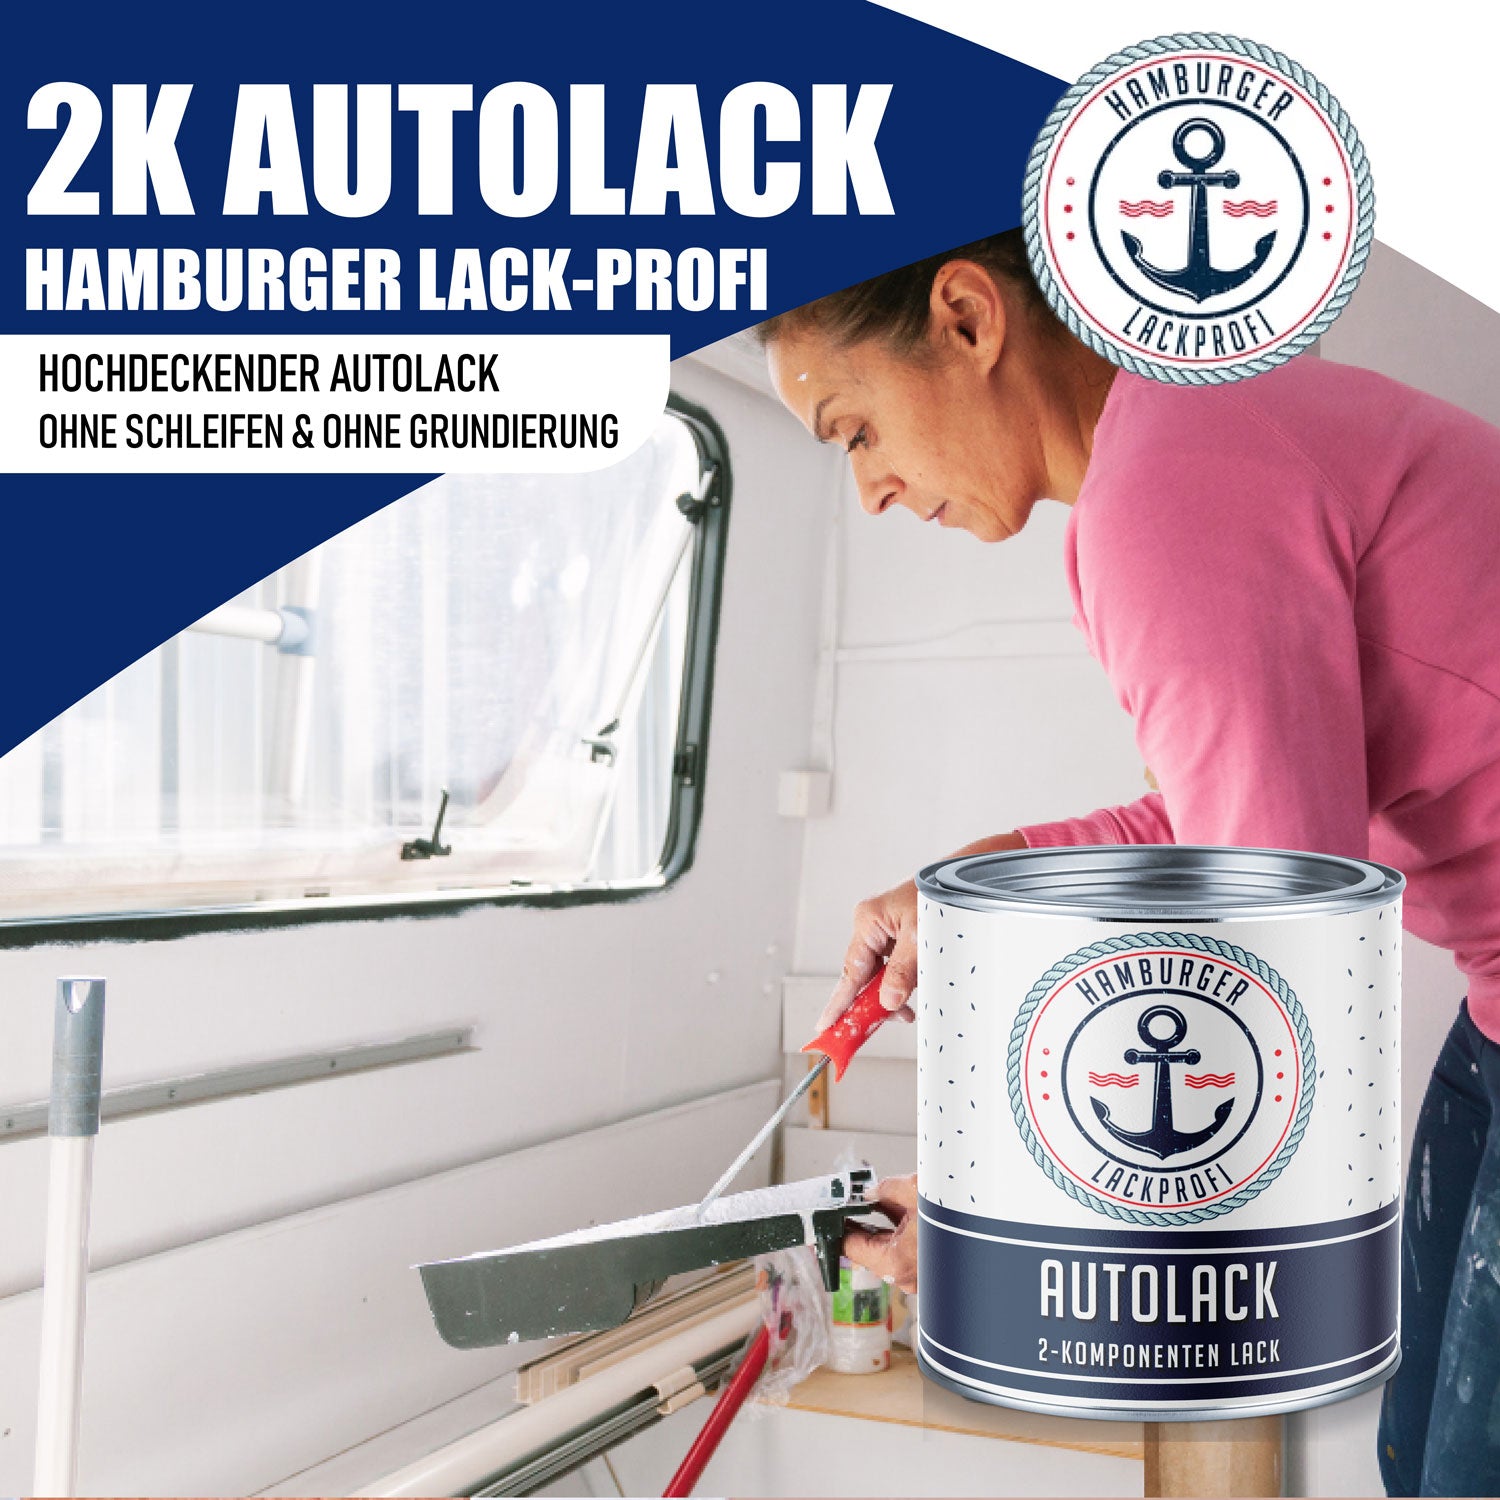 Hamburger Lack-Profi 2K Autolack in Olivgrau RAL 7002 mit Lackierset (X300) & Verdünnung (1 L) - 30% Sparangebot